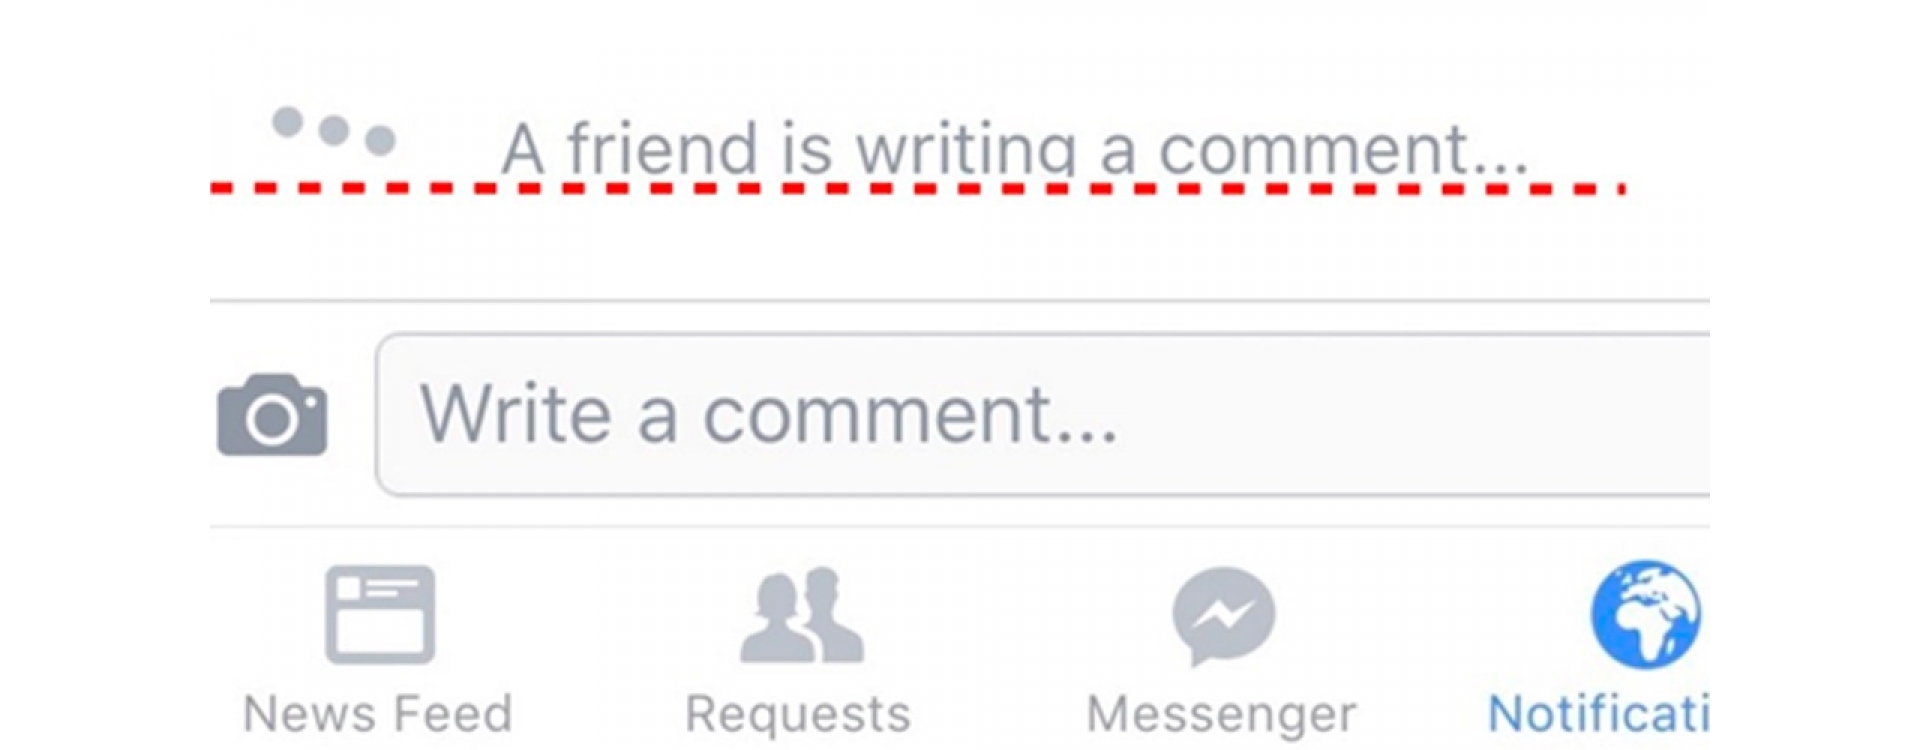 App do facebook agora permite ver quando alguém está escrevendo comentário 